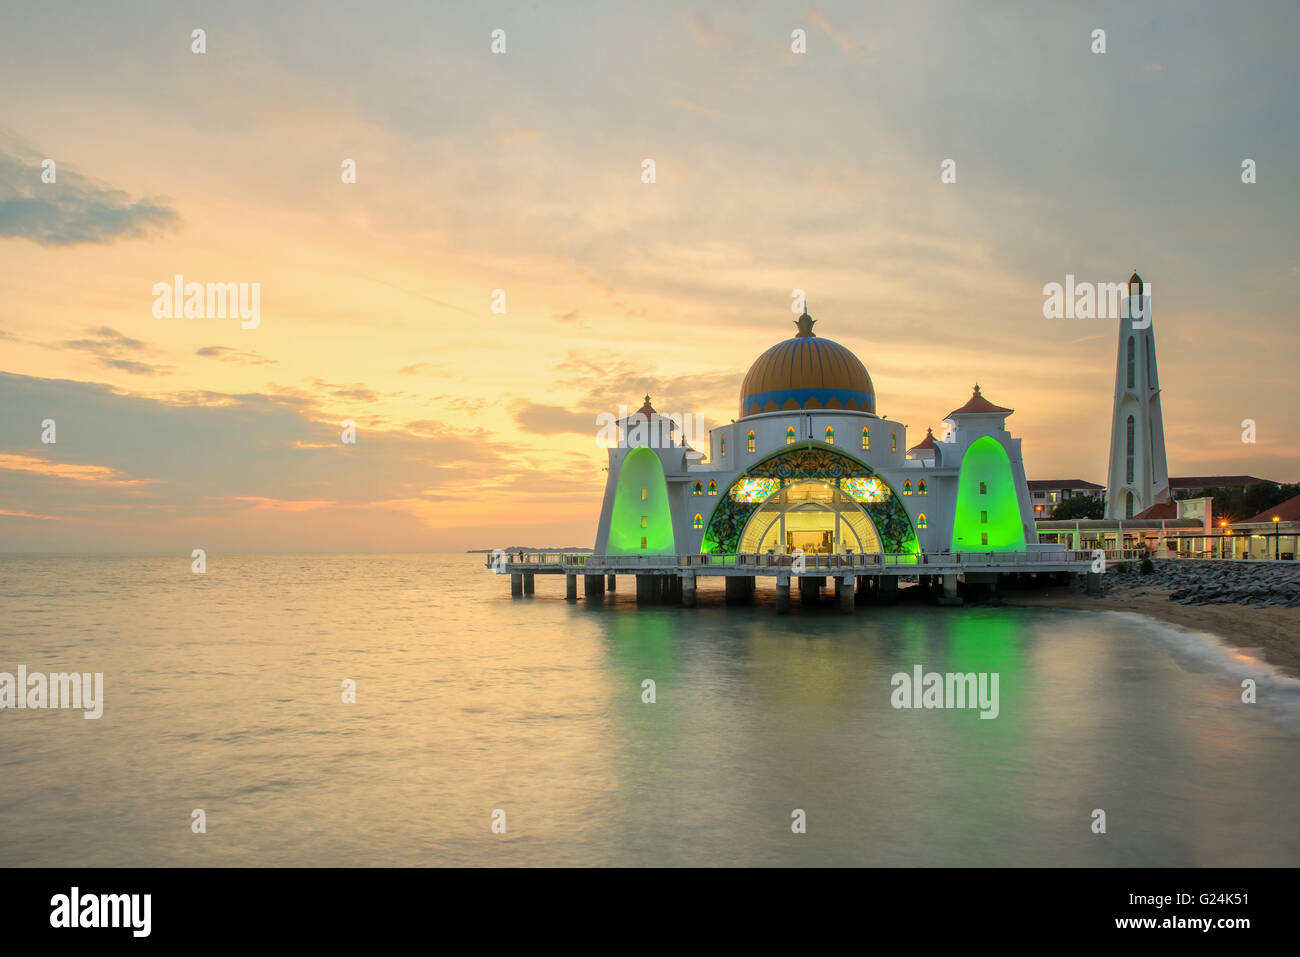 Malacca Straits Mosque, Malaysia at sunset Stock Photo